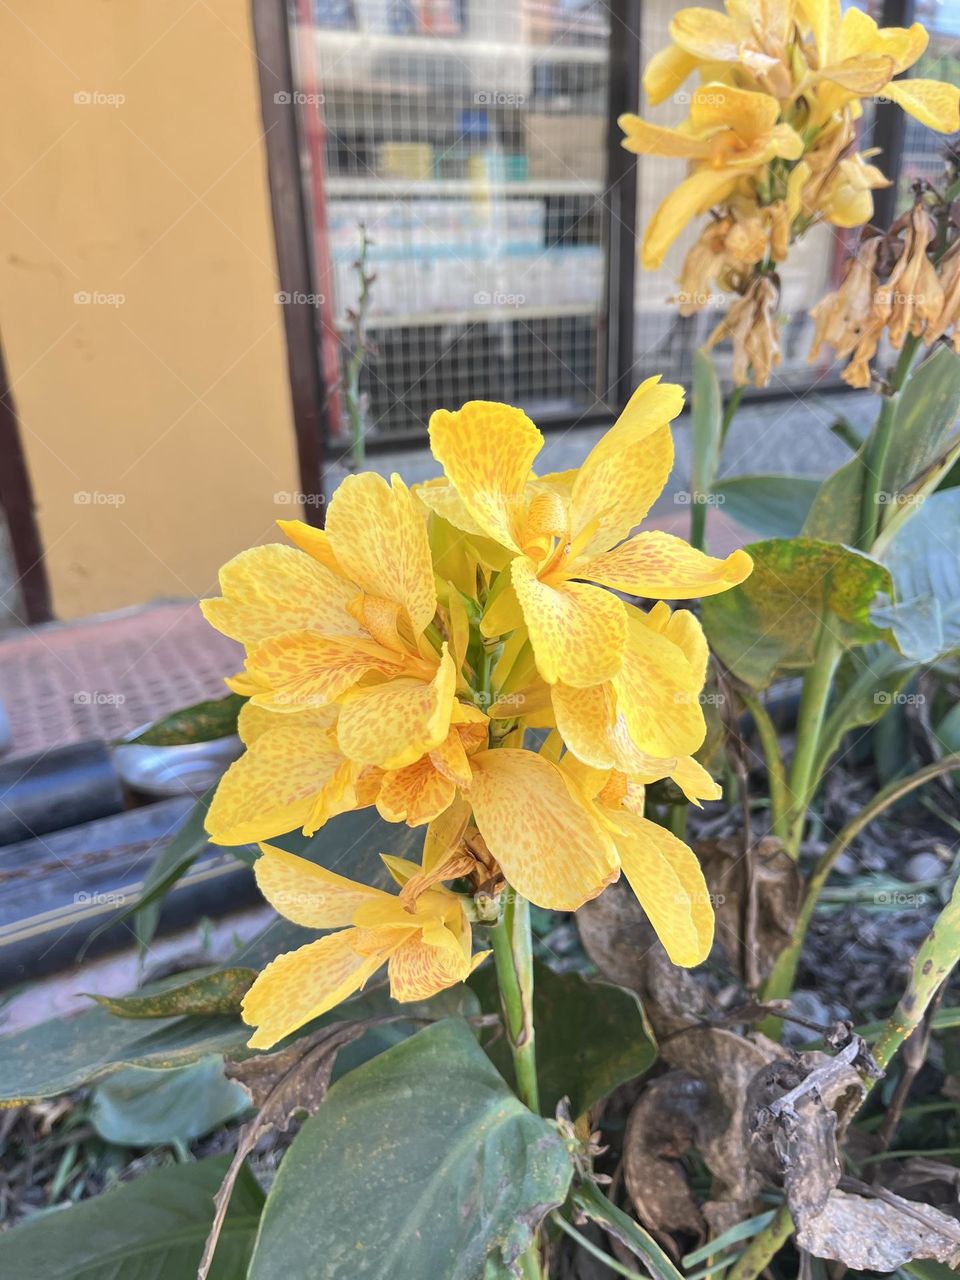 Beautiful yellow flower, found on the streets of Kathmandu Nepal.